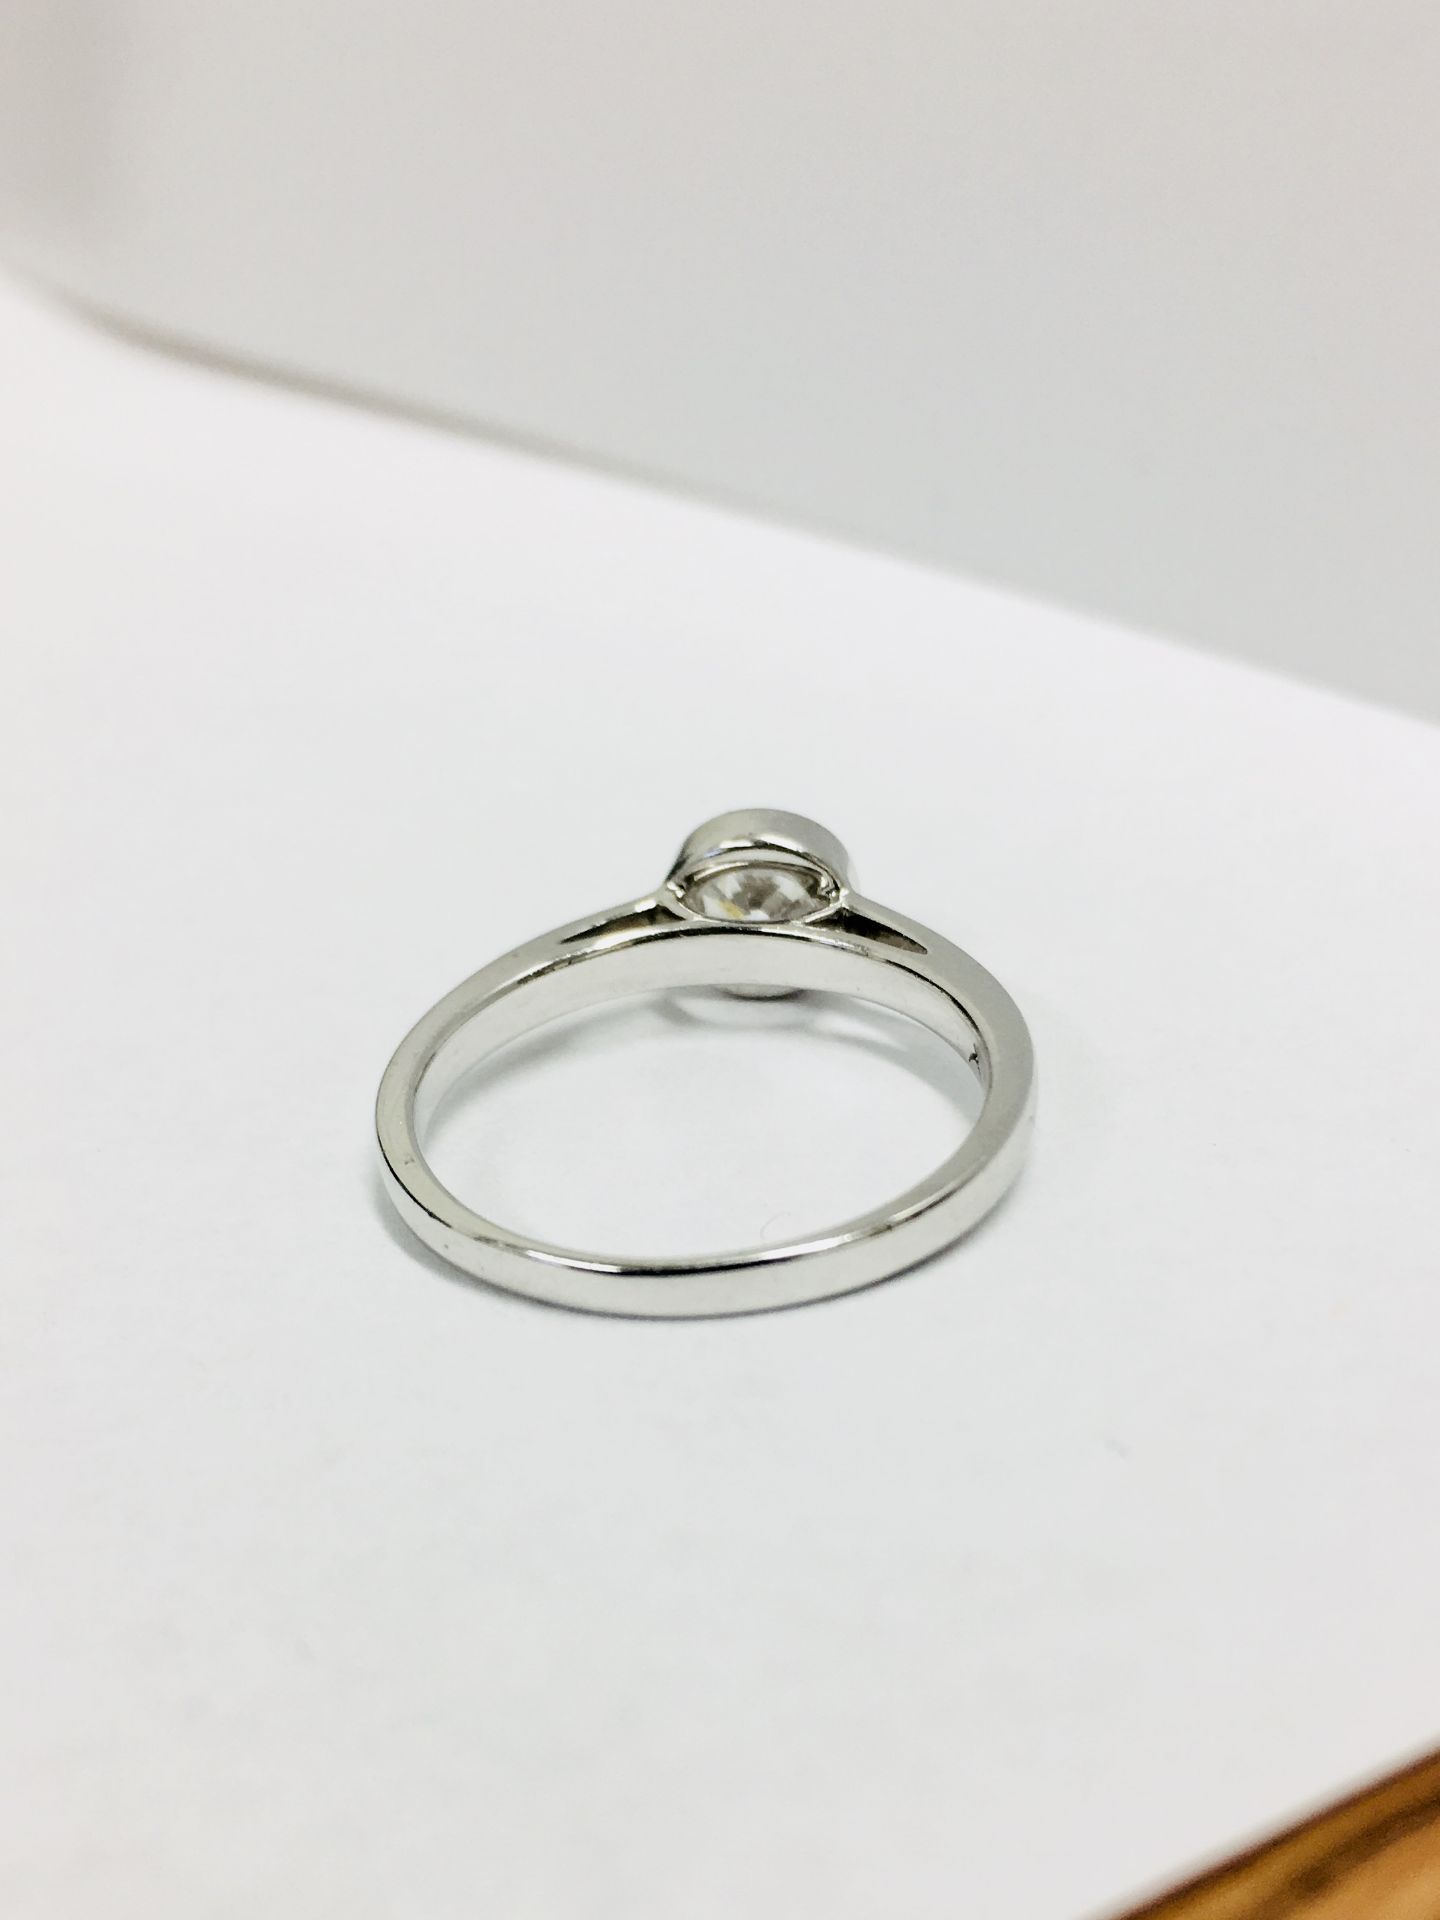 Platinum diamond solitaire ring,0.50ct brilliant cut diamond D colour vs clarity,Platinum rubover - Image 5 of 5